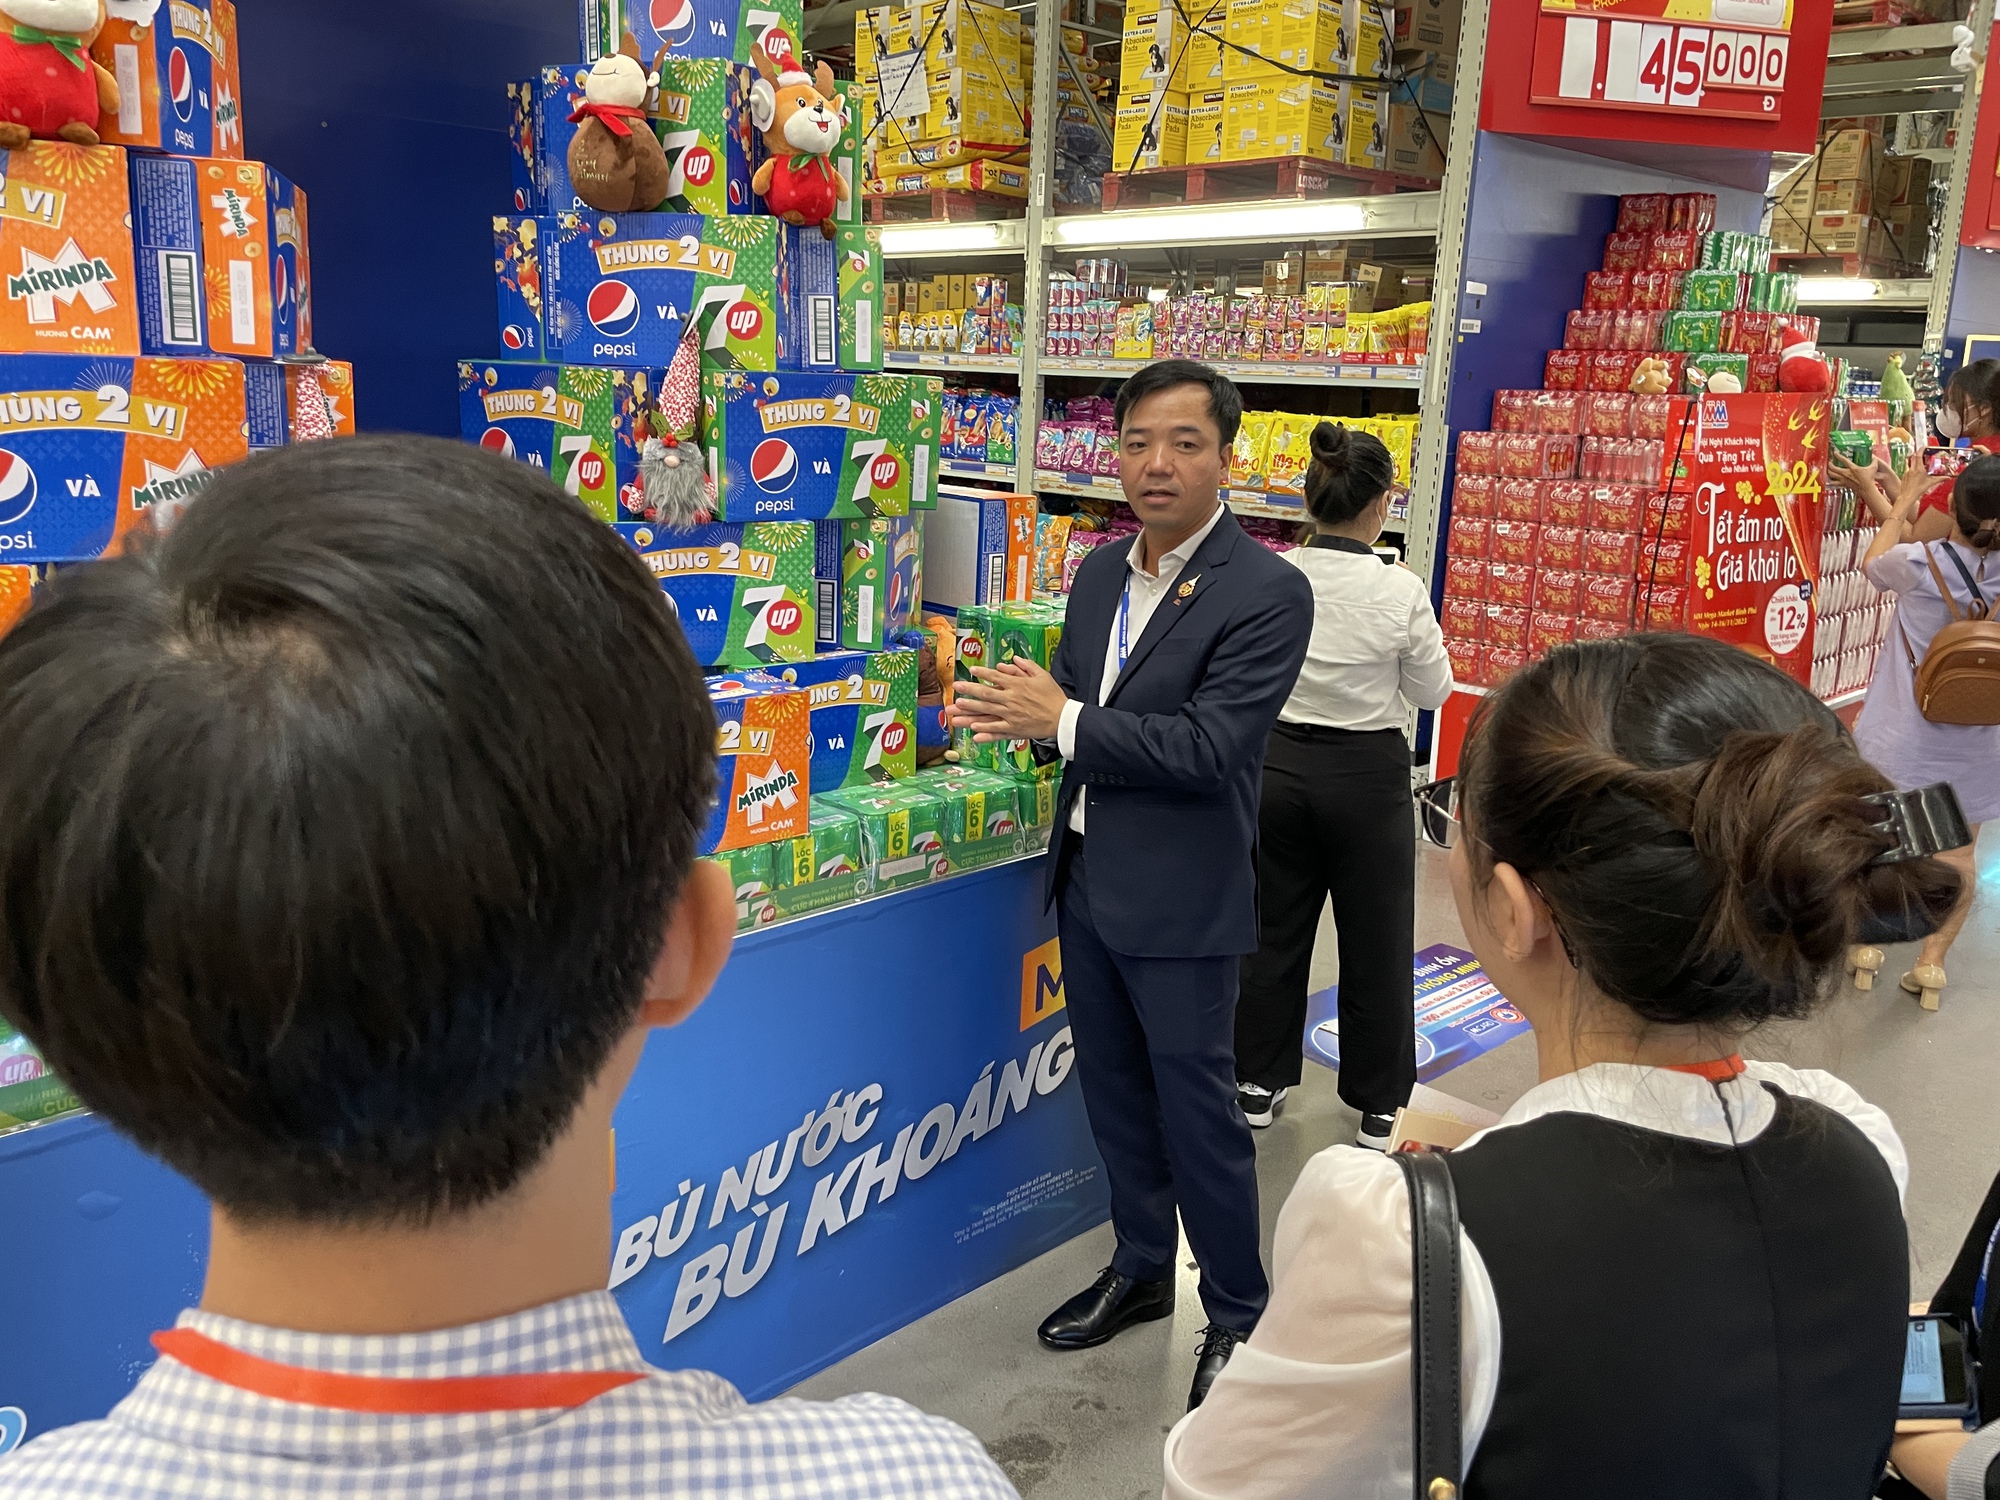 MM Mega Market tiết lộ mục tiêu 59 siêu thị tại Việt Nam, đang rót 20 triệu USD vào 1 trung tâm mua sắm - Ảnh 2.